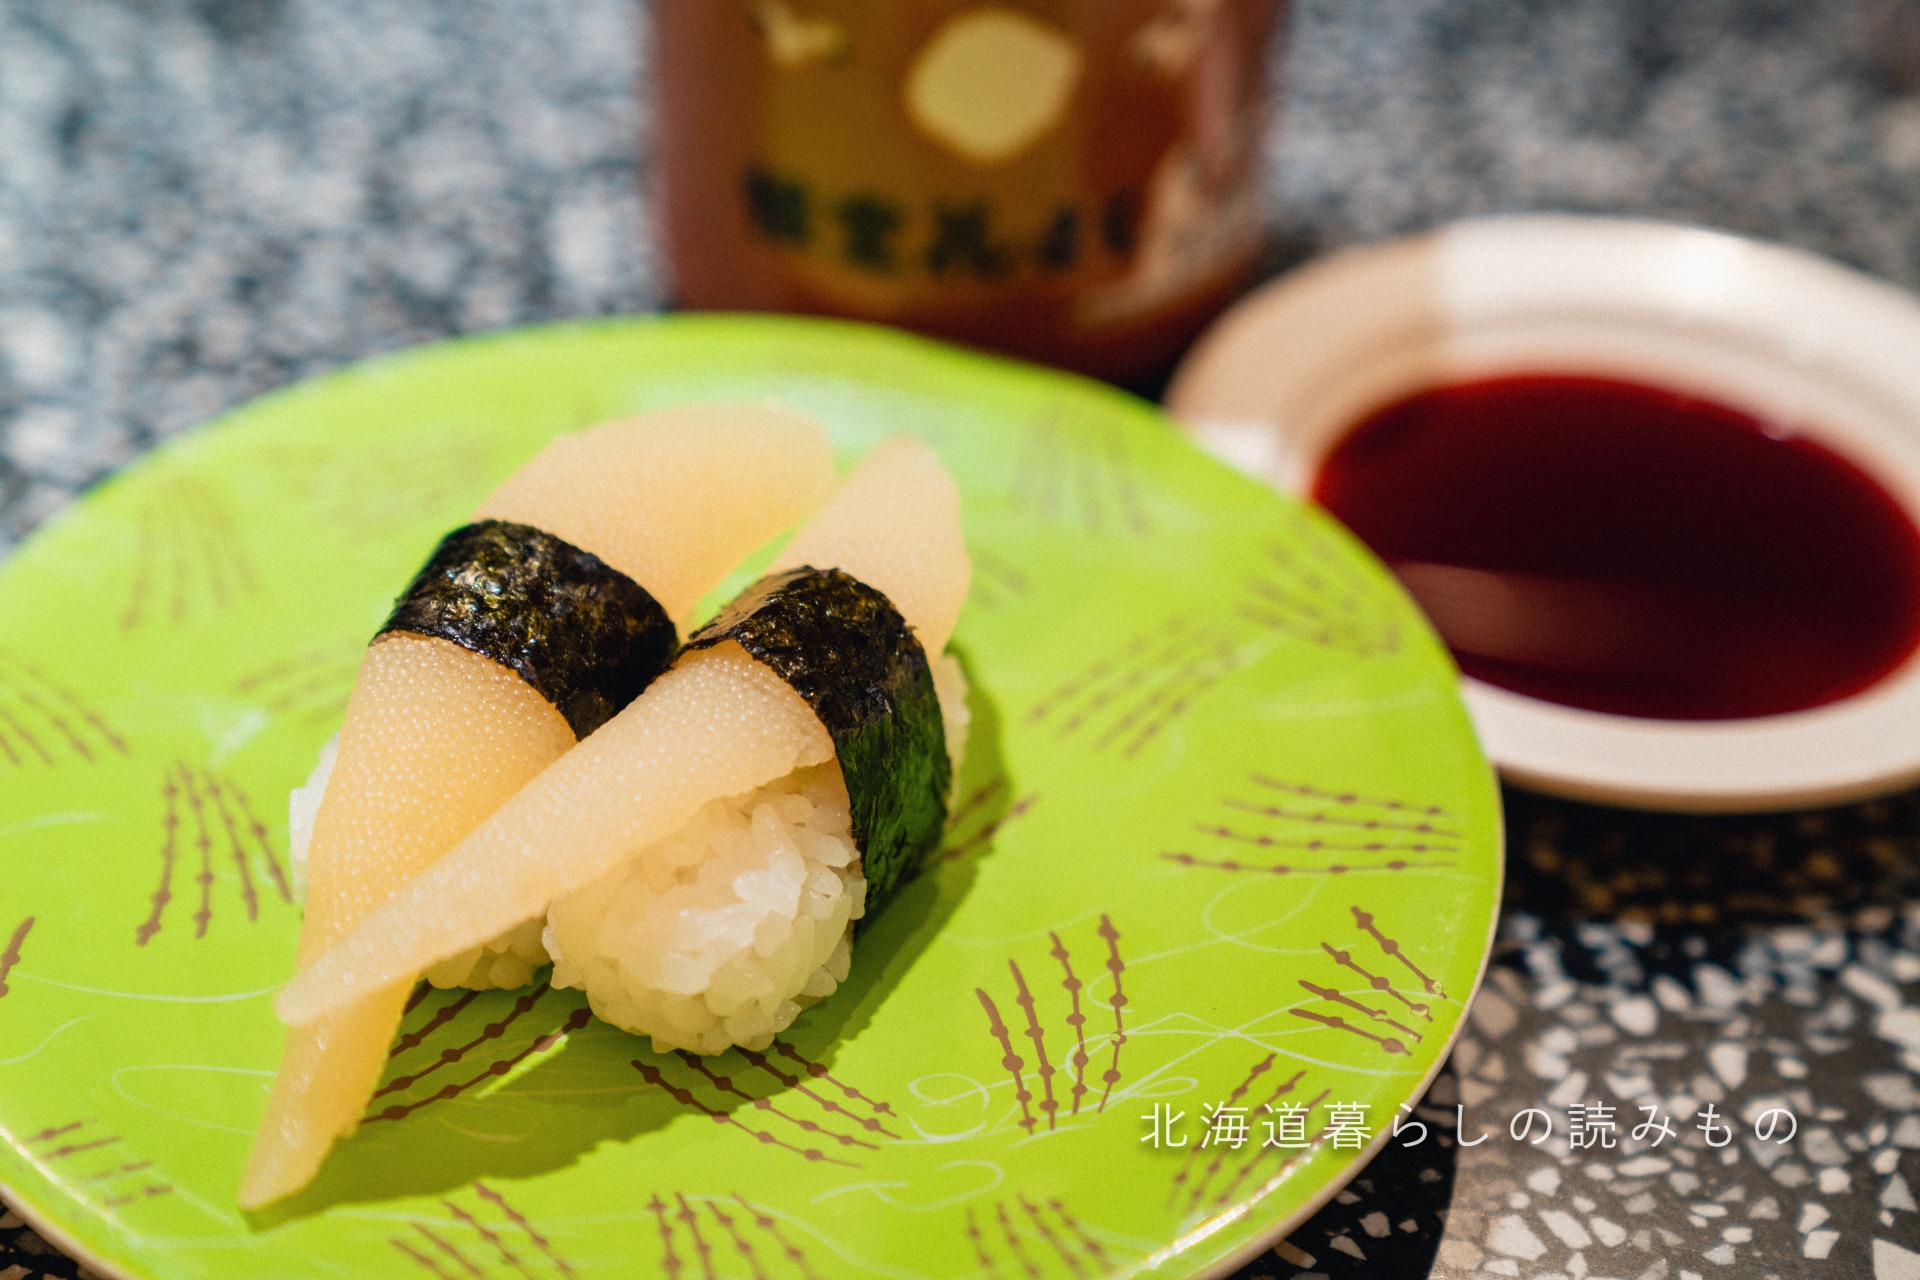 迴轉壽司根室花丸的菜單上的「干青魚子」